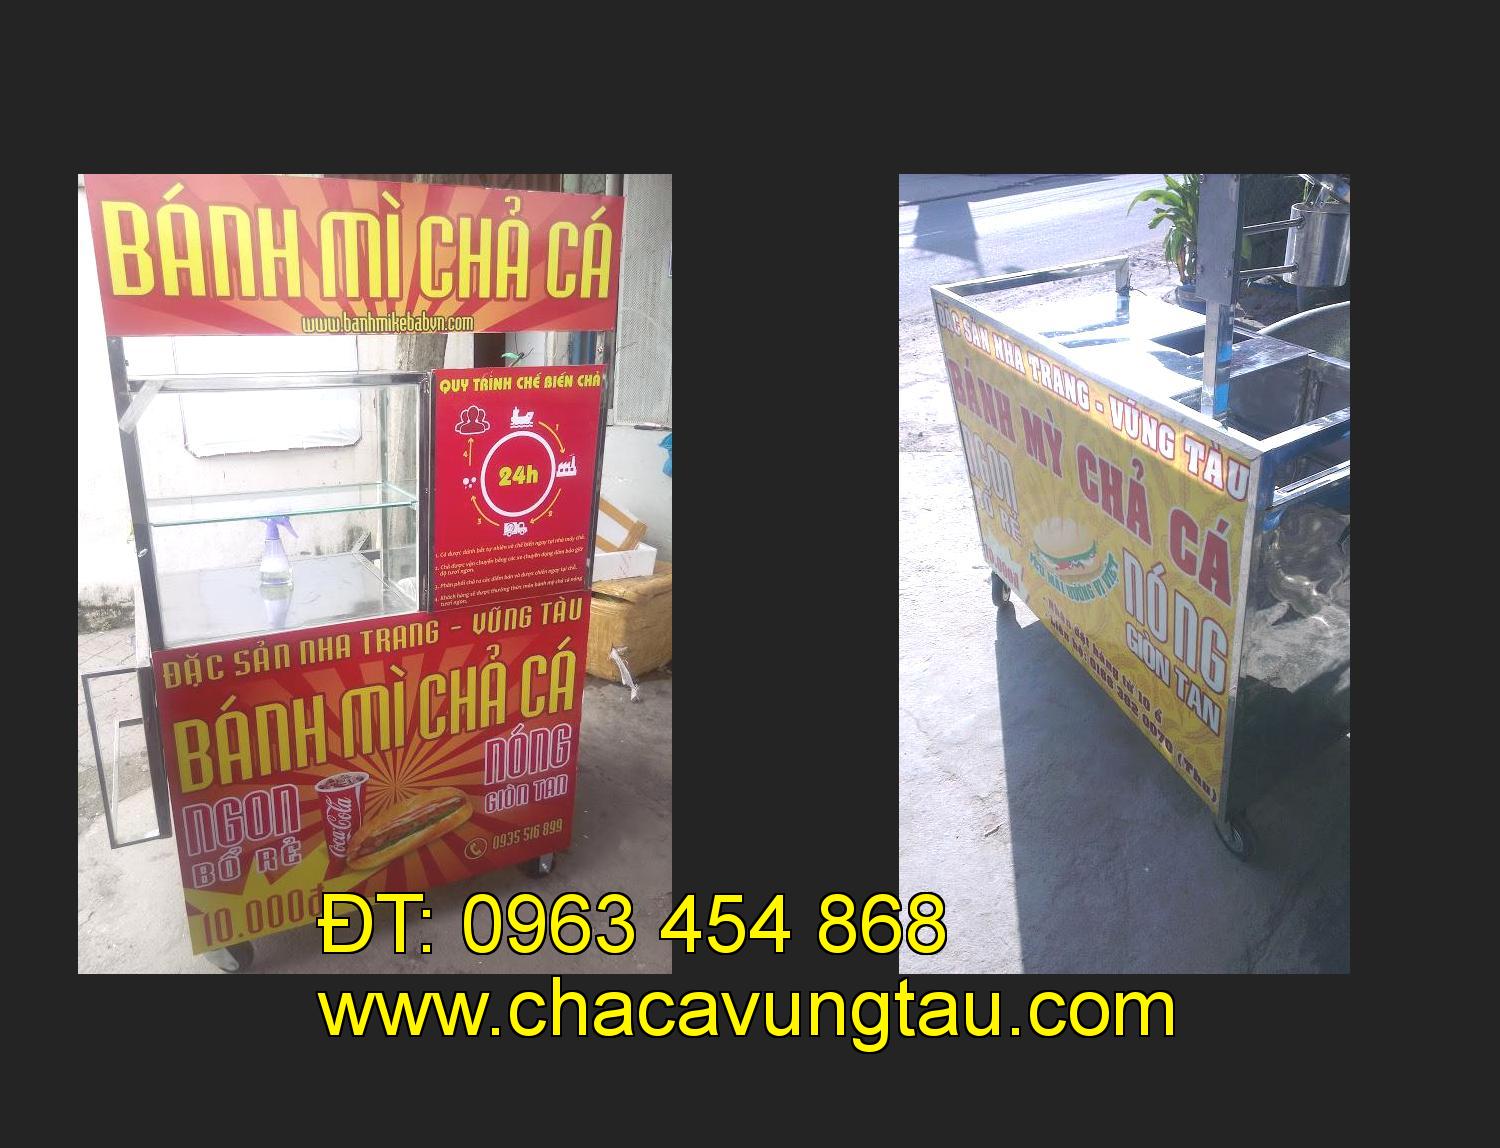 xe bánh mì chả cá giá rẻ tại tỉnh Tây Ninh